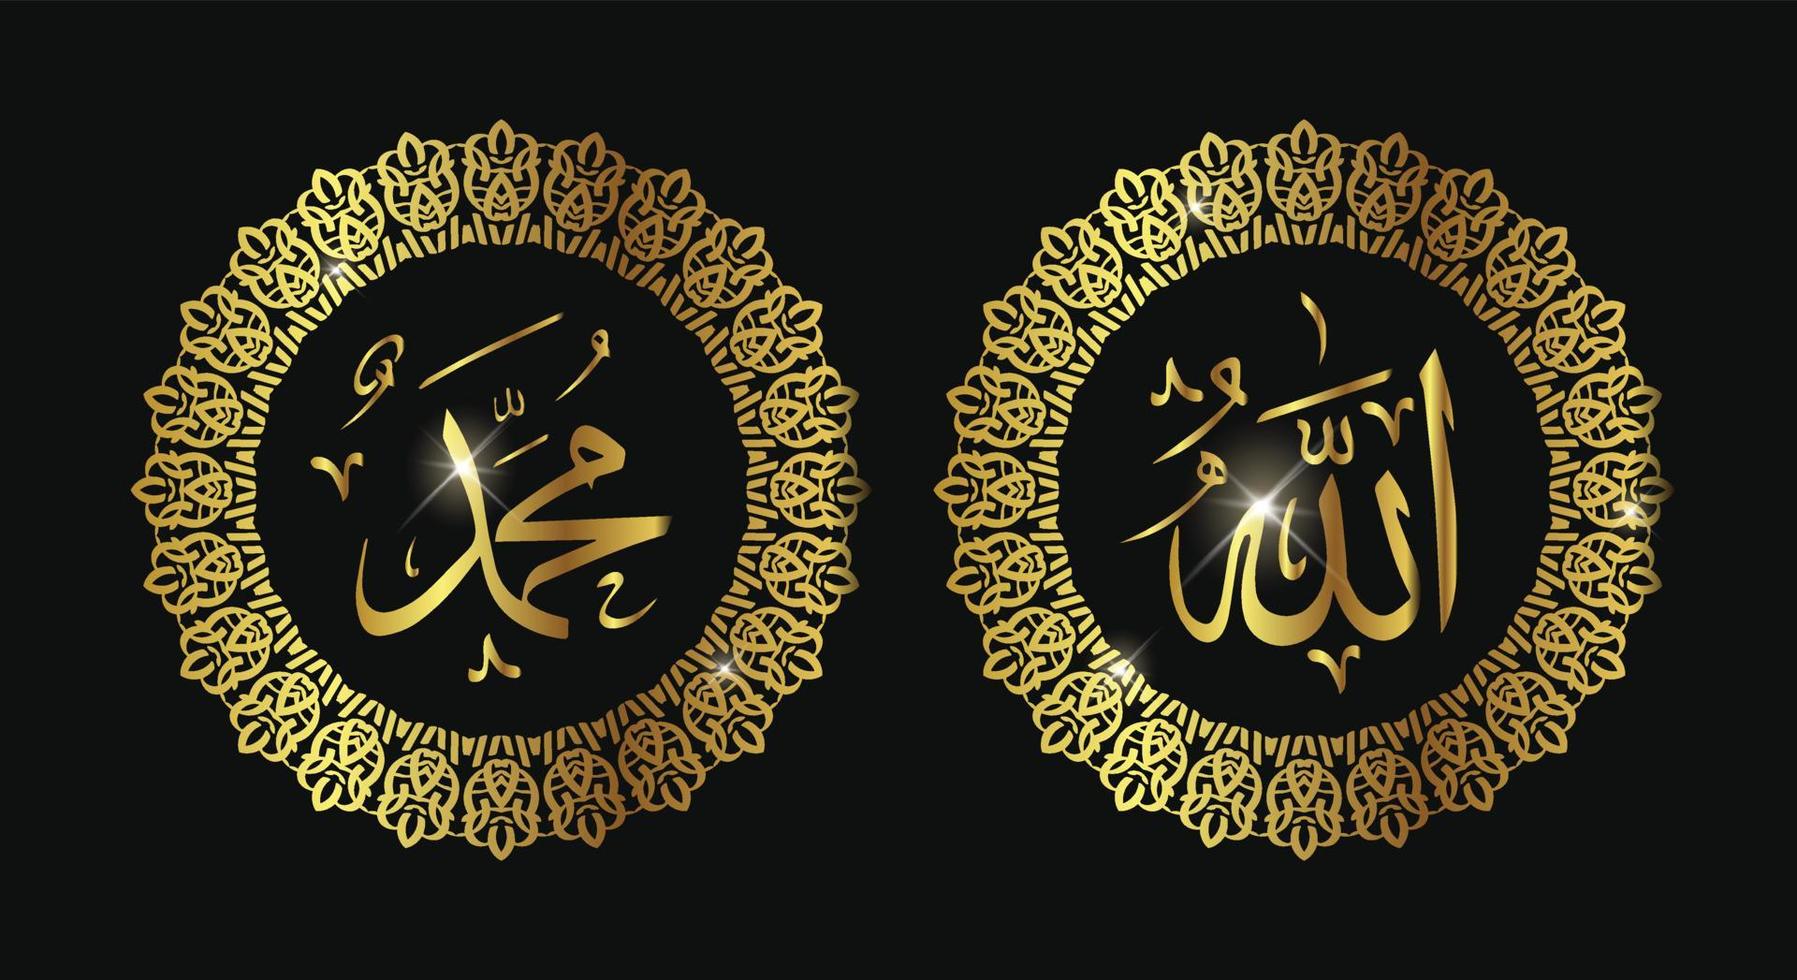 allah muhammad nome di allah muhammad, allah muhammad arte calligrafica islamica araba, isolato su sfondo scuro. vettore